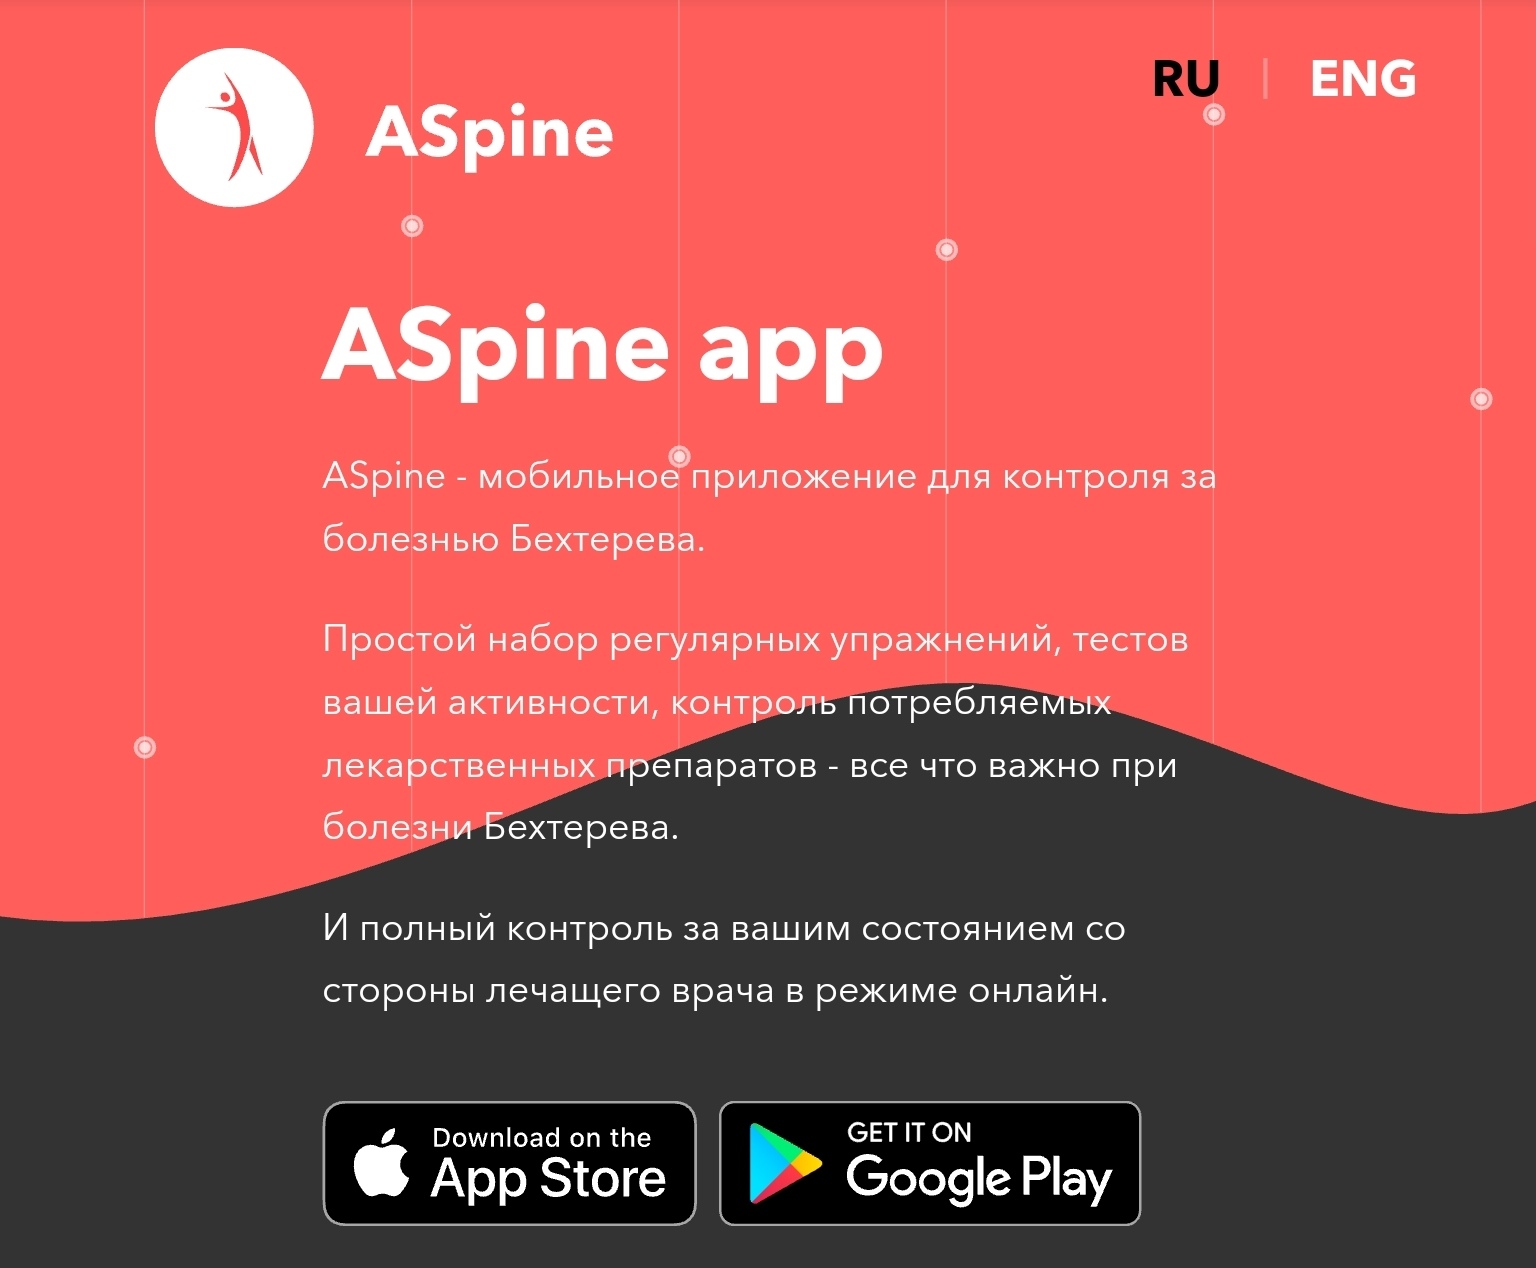 ASpine - мобильное приложение для контроля за болезнью Бехтерева